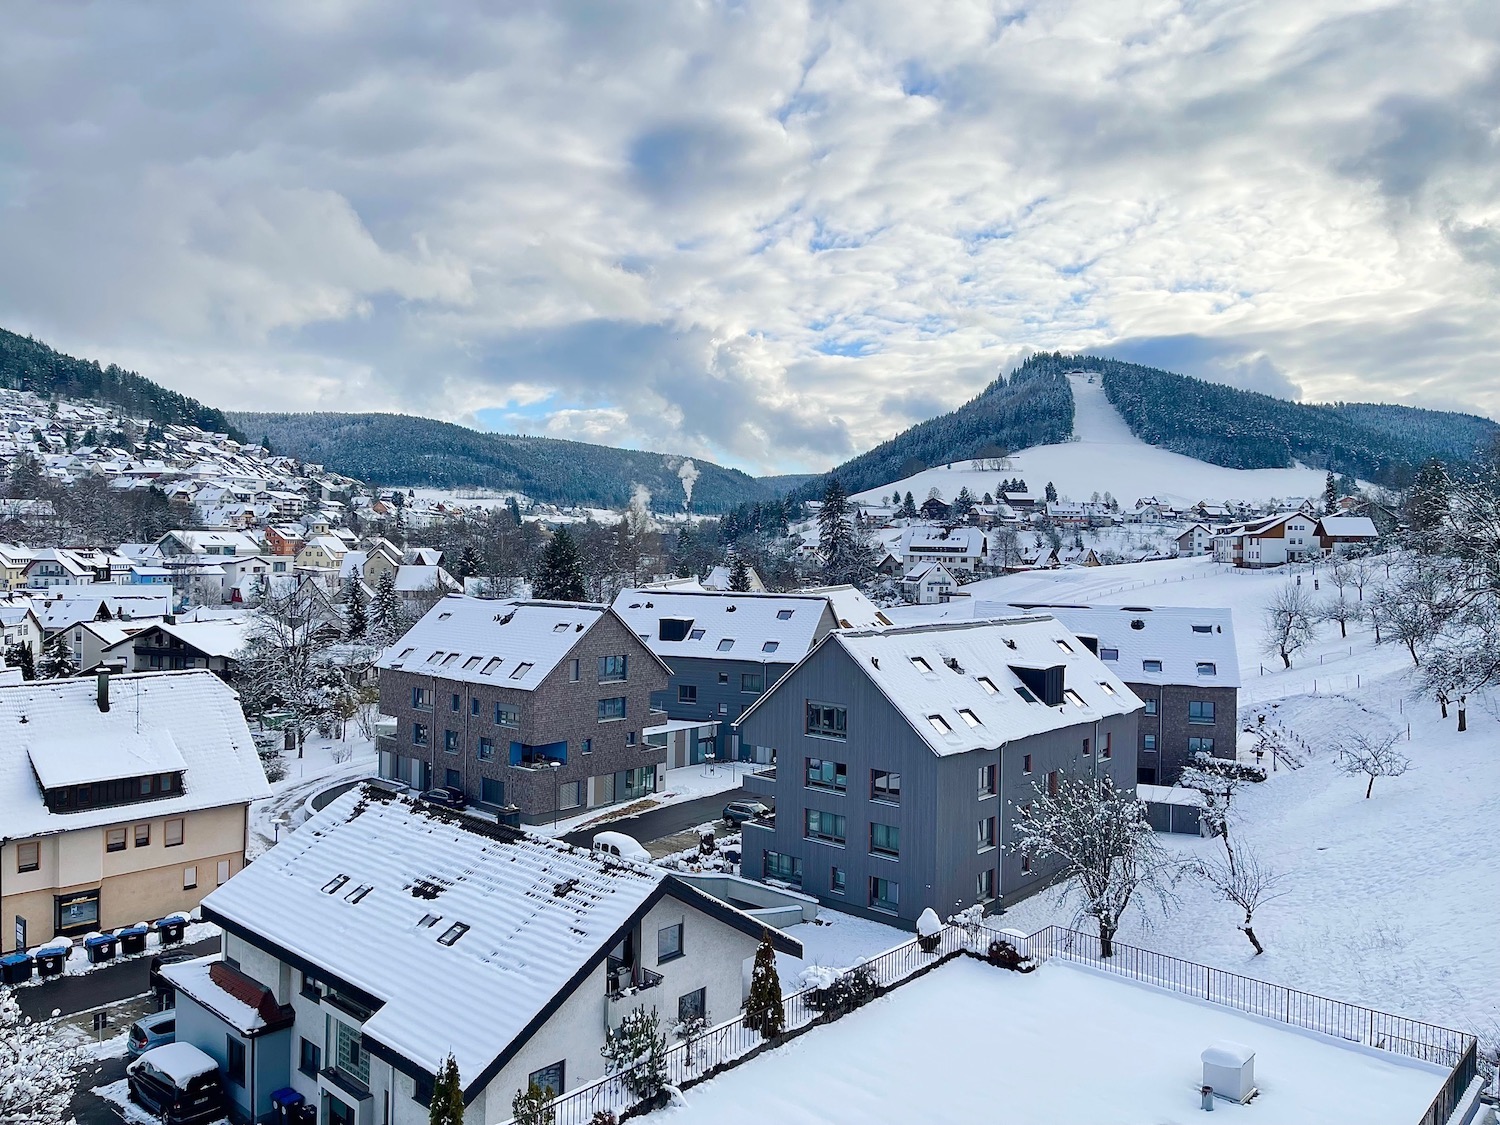 [Translate to English:] Hotel-Ausblick auf das winterliche Baiersbronn